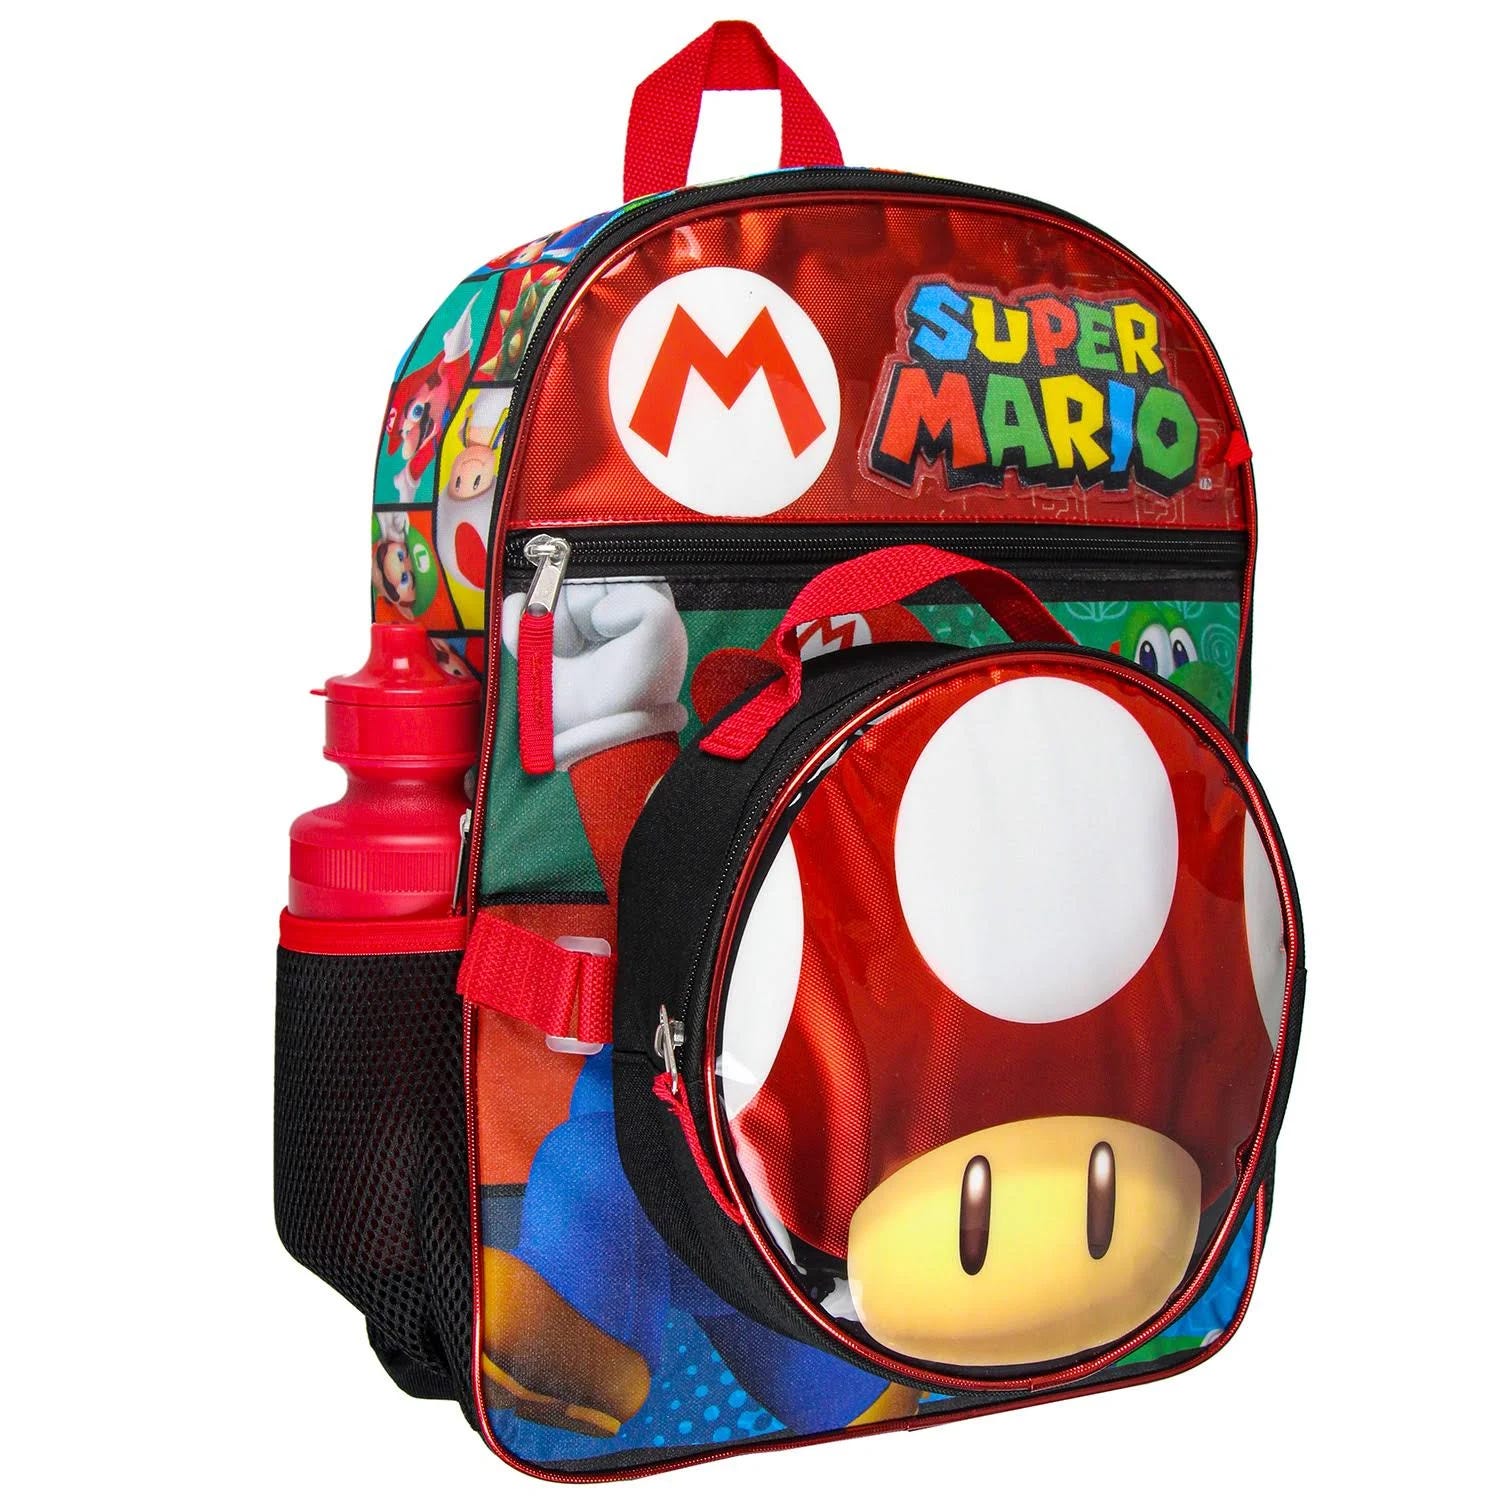 Stylish Super Mario Backpack Set | Image